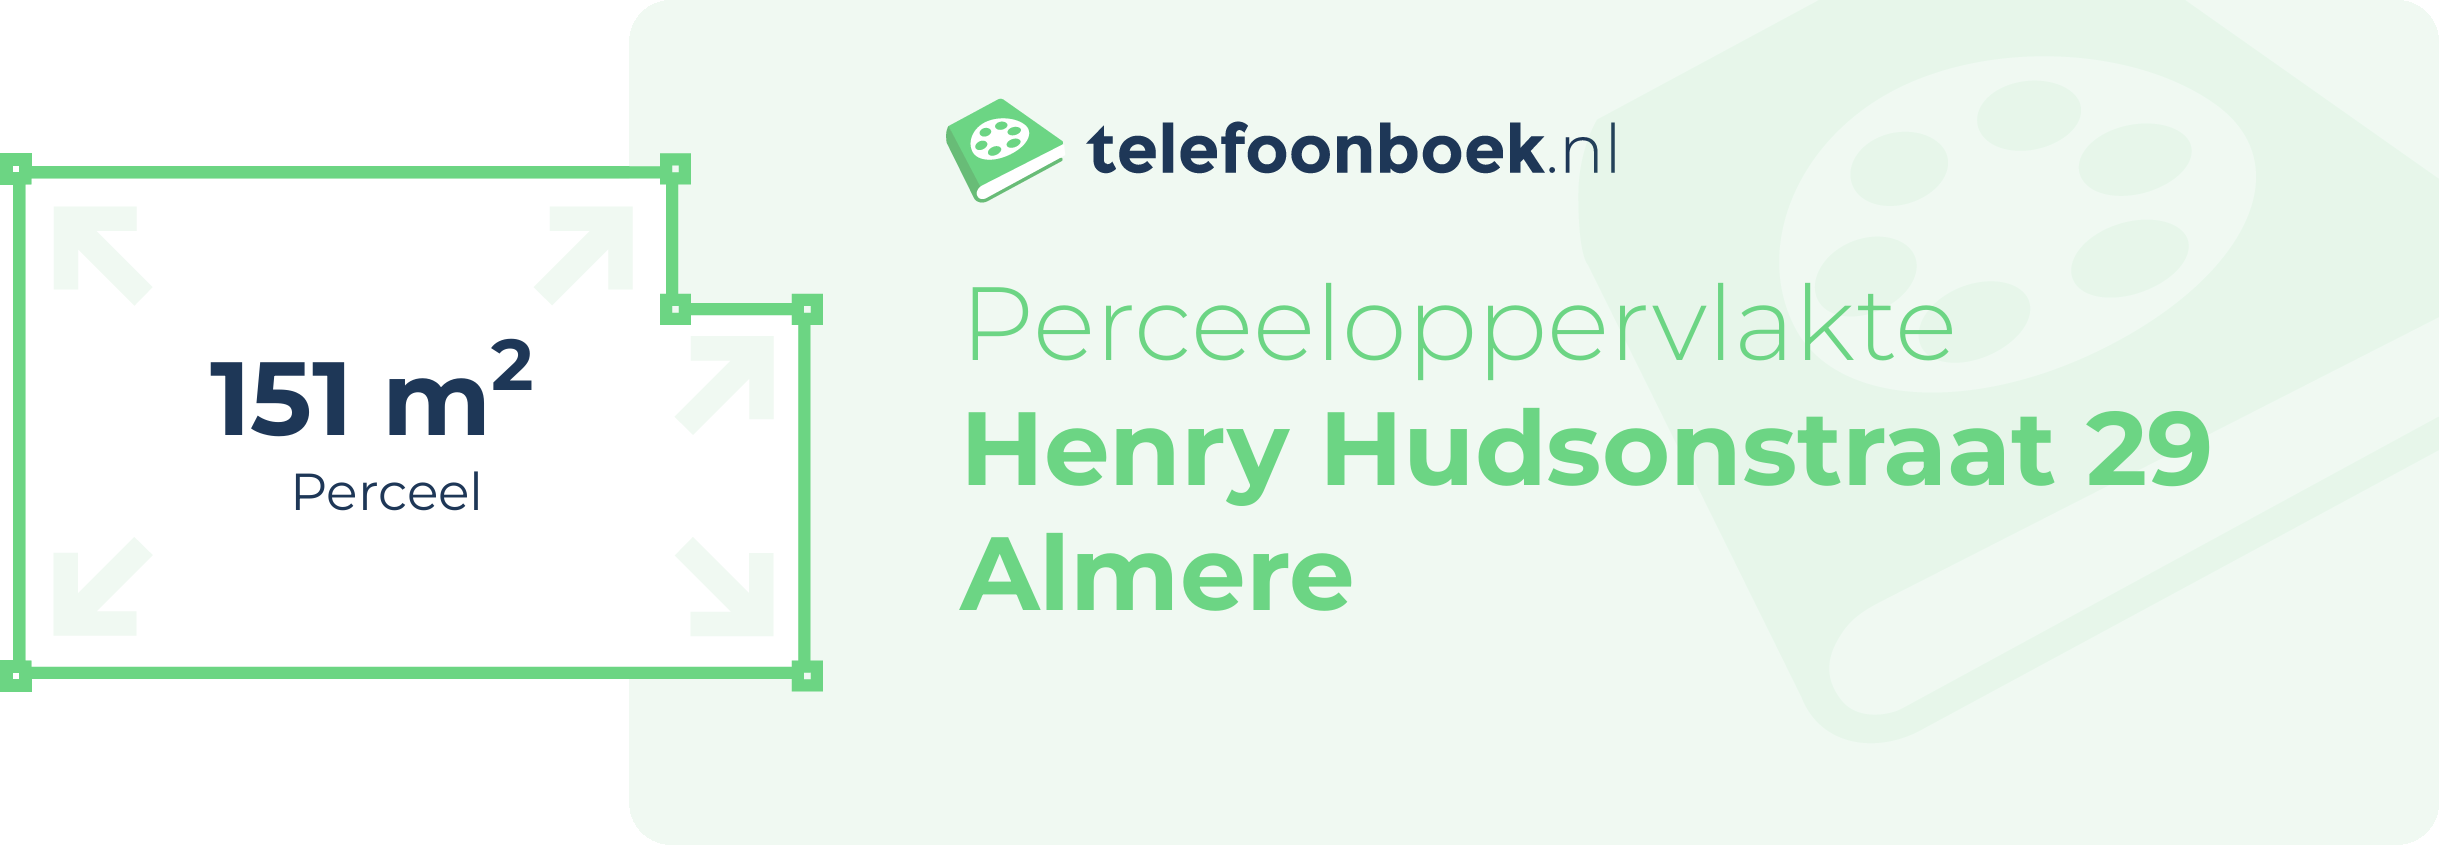 Perceeloppervlakte Henry Hudsonstraat 29 Almere